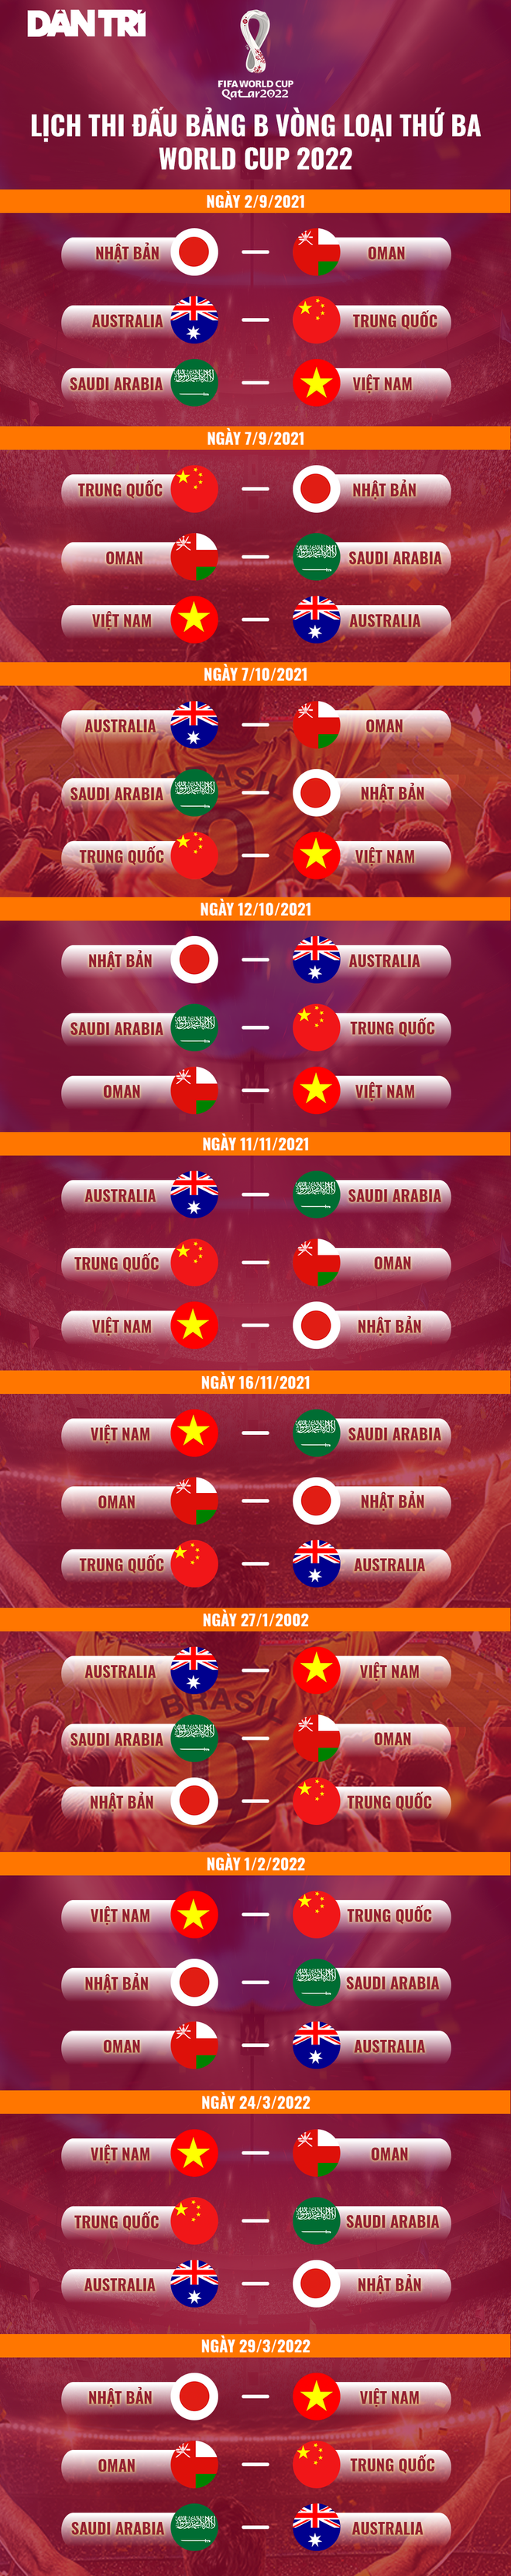 Báo Trung Quốc bình luận gì về tuyển Việt Nam trước vòng loại World Cup? - 3